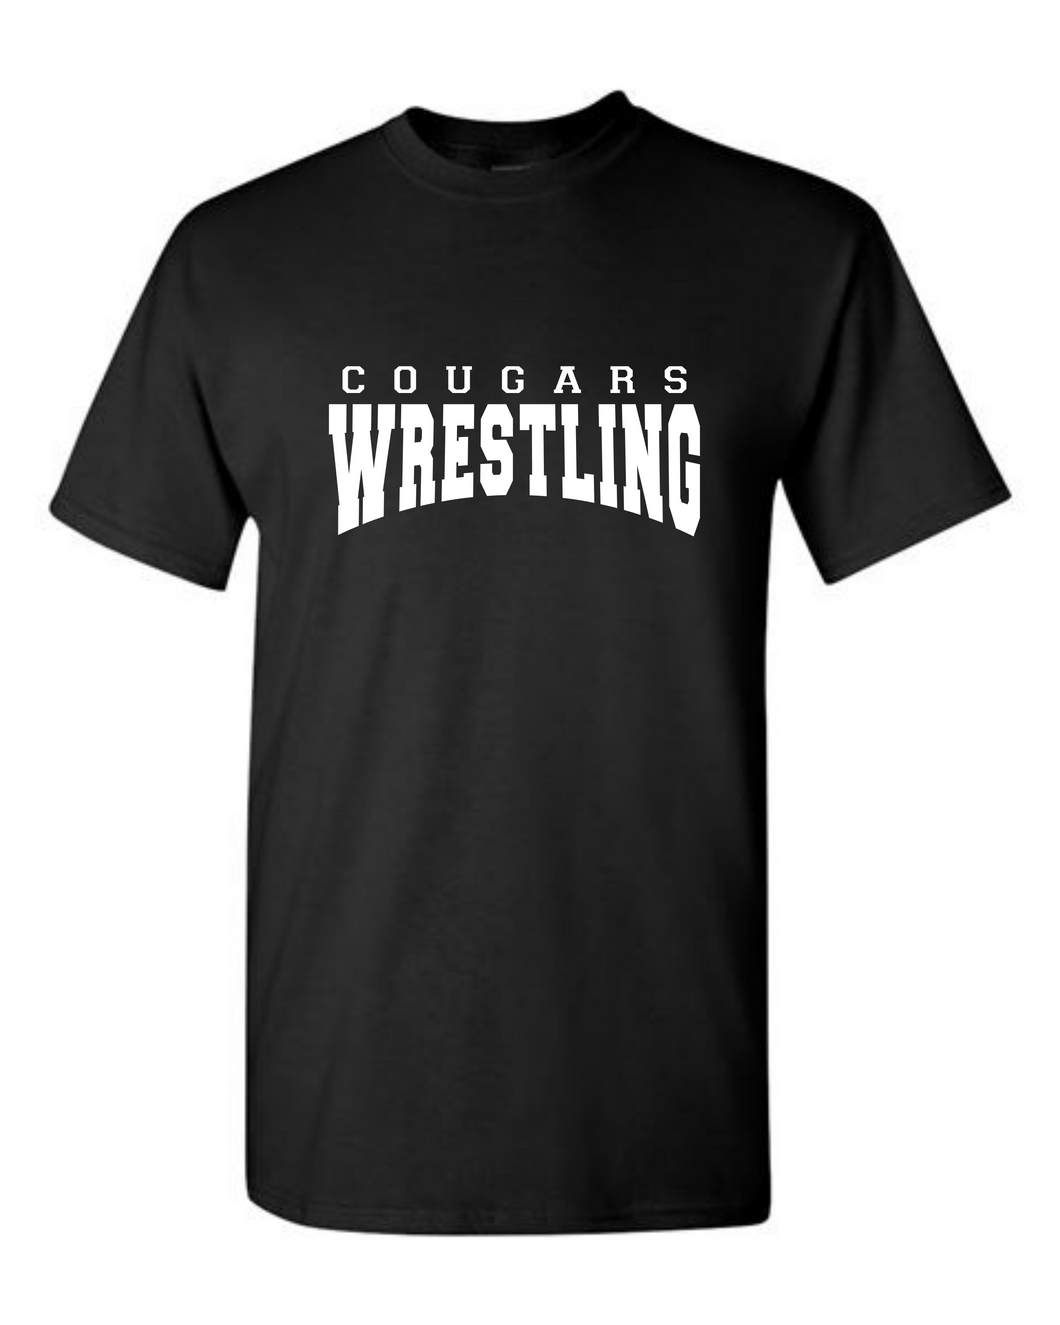 Cougars Wrestling Tshirt